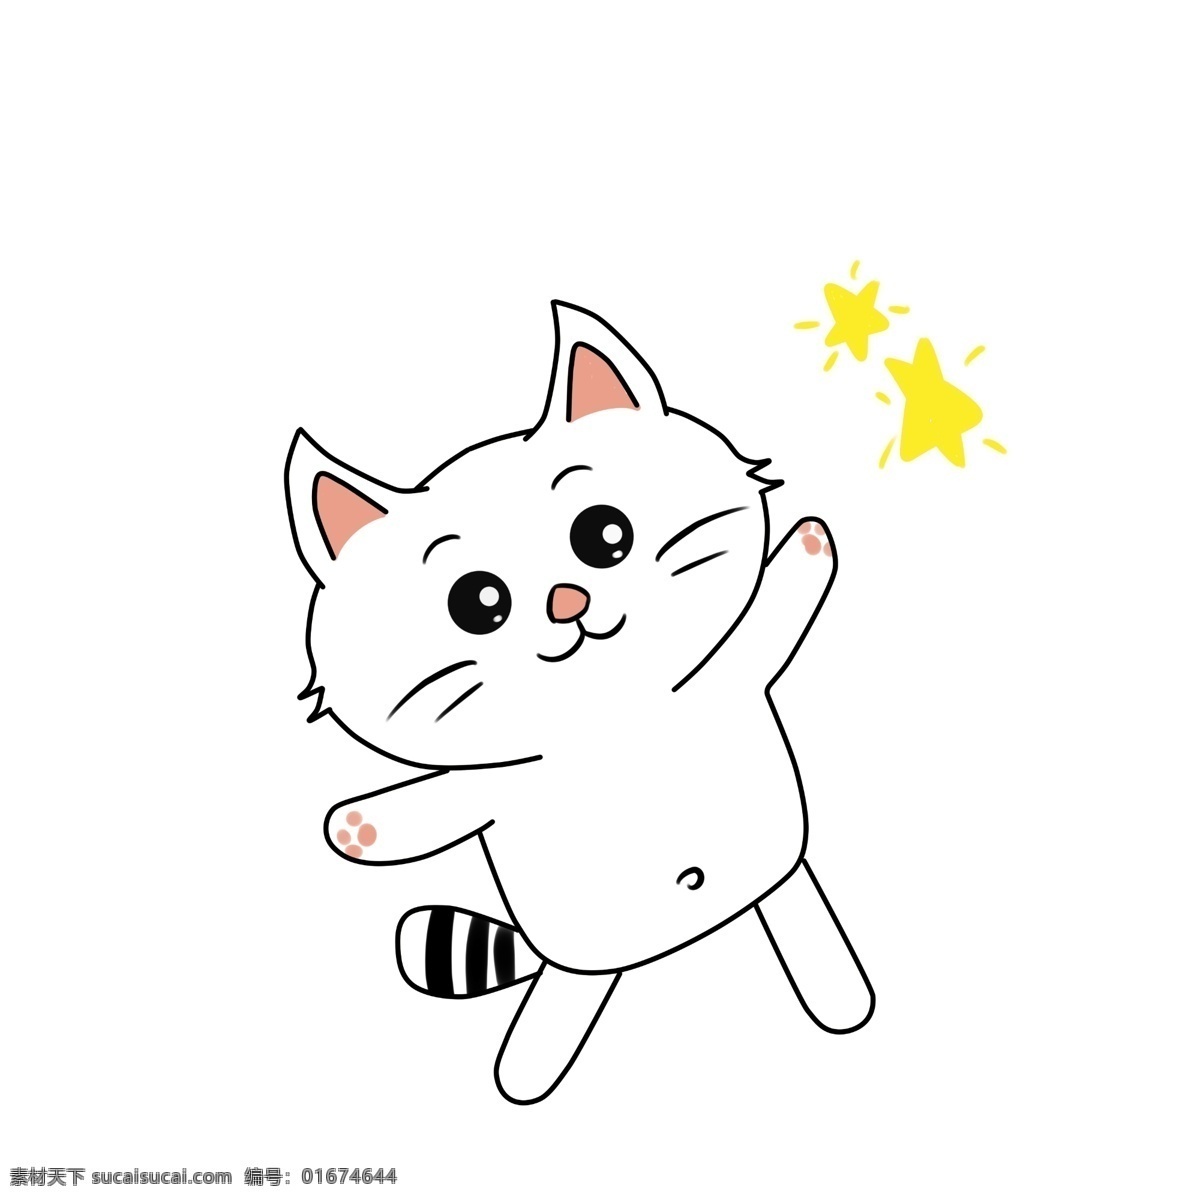 卡通 动物 可爱 猫咪 卡通可爱 卡通动物 可爱卡通 可爱动物 动物卡通 白色猫咪 星星